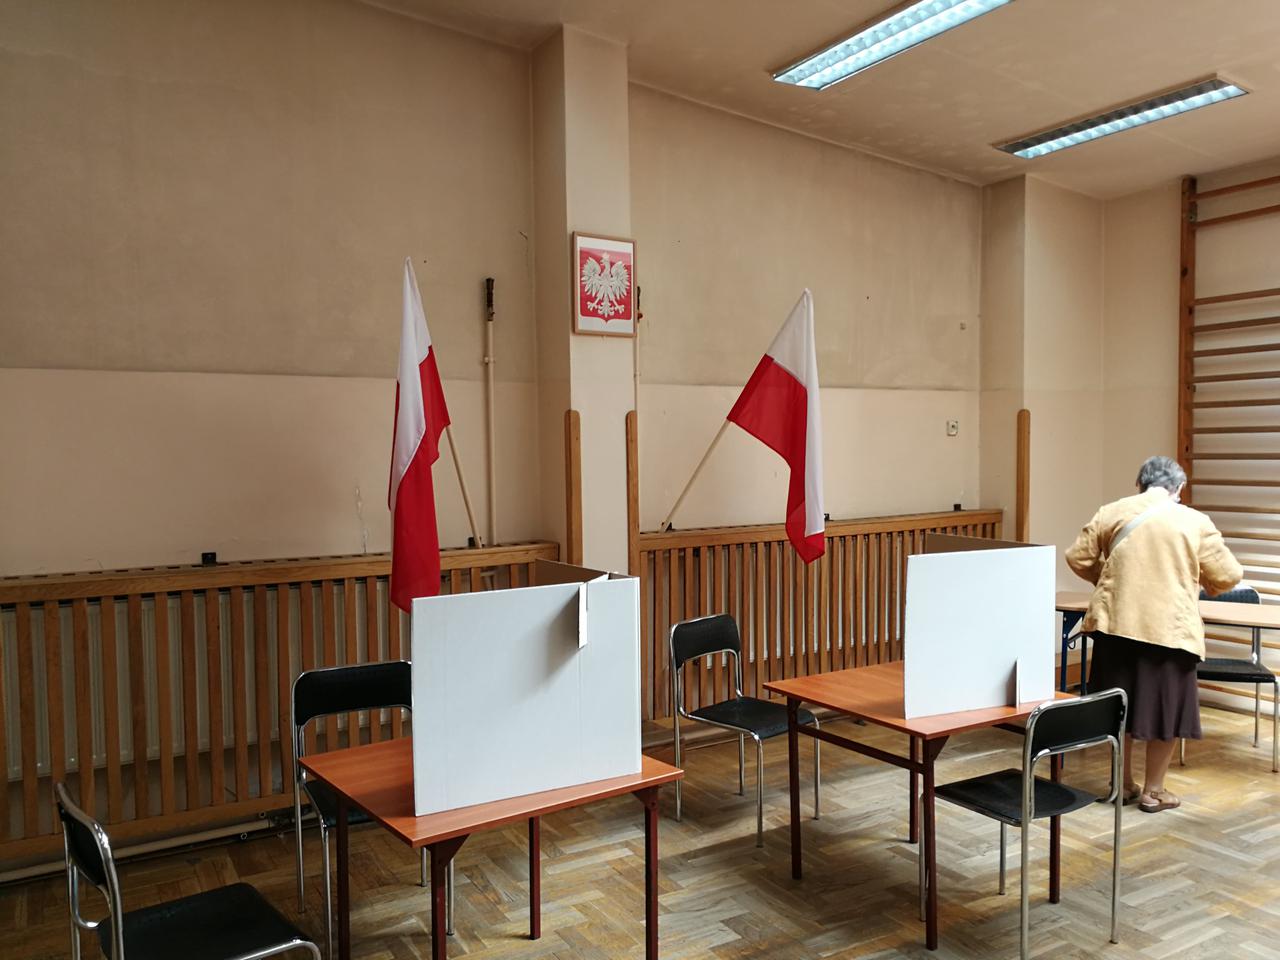 Mieszkaniec Krakowa skreślony ze spisu wyborców. Błąd leży po stronie miasta i platformy ePUAP